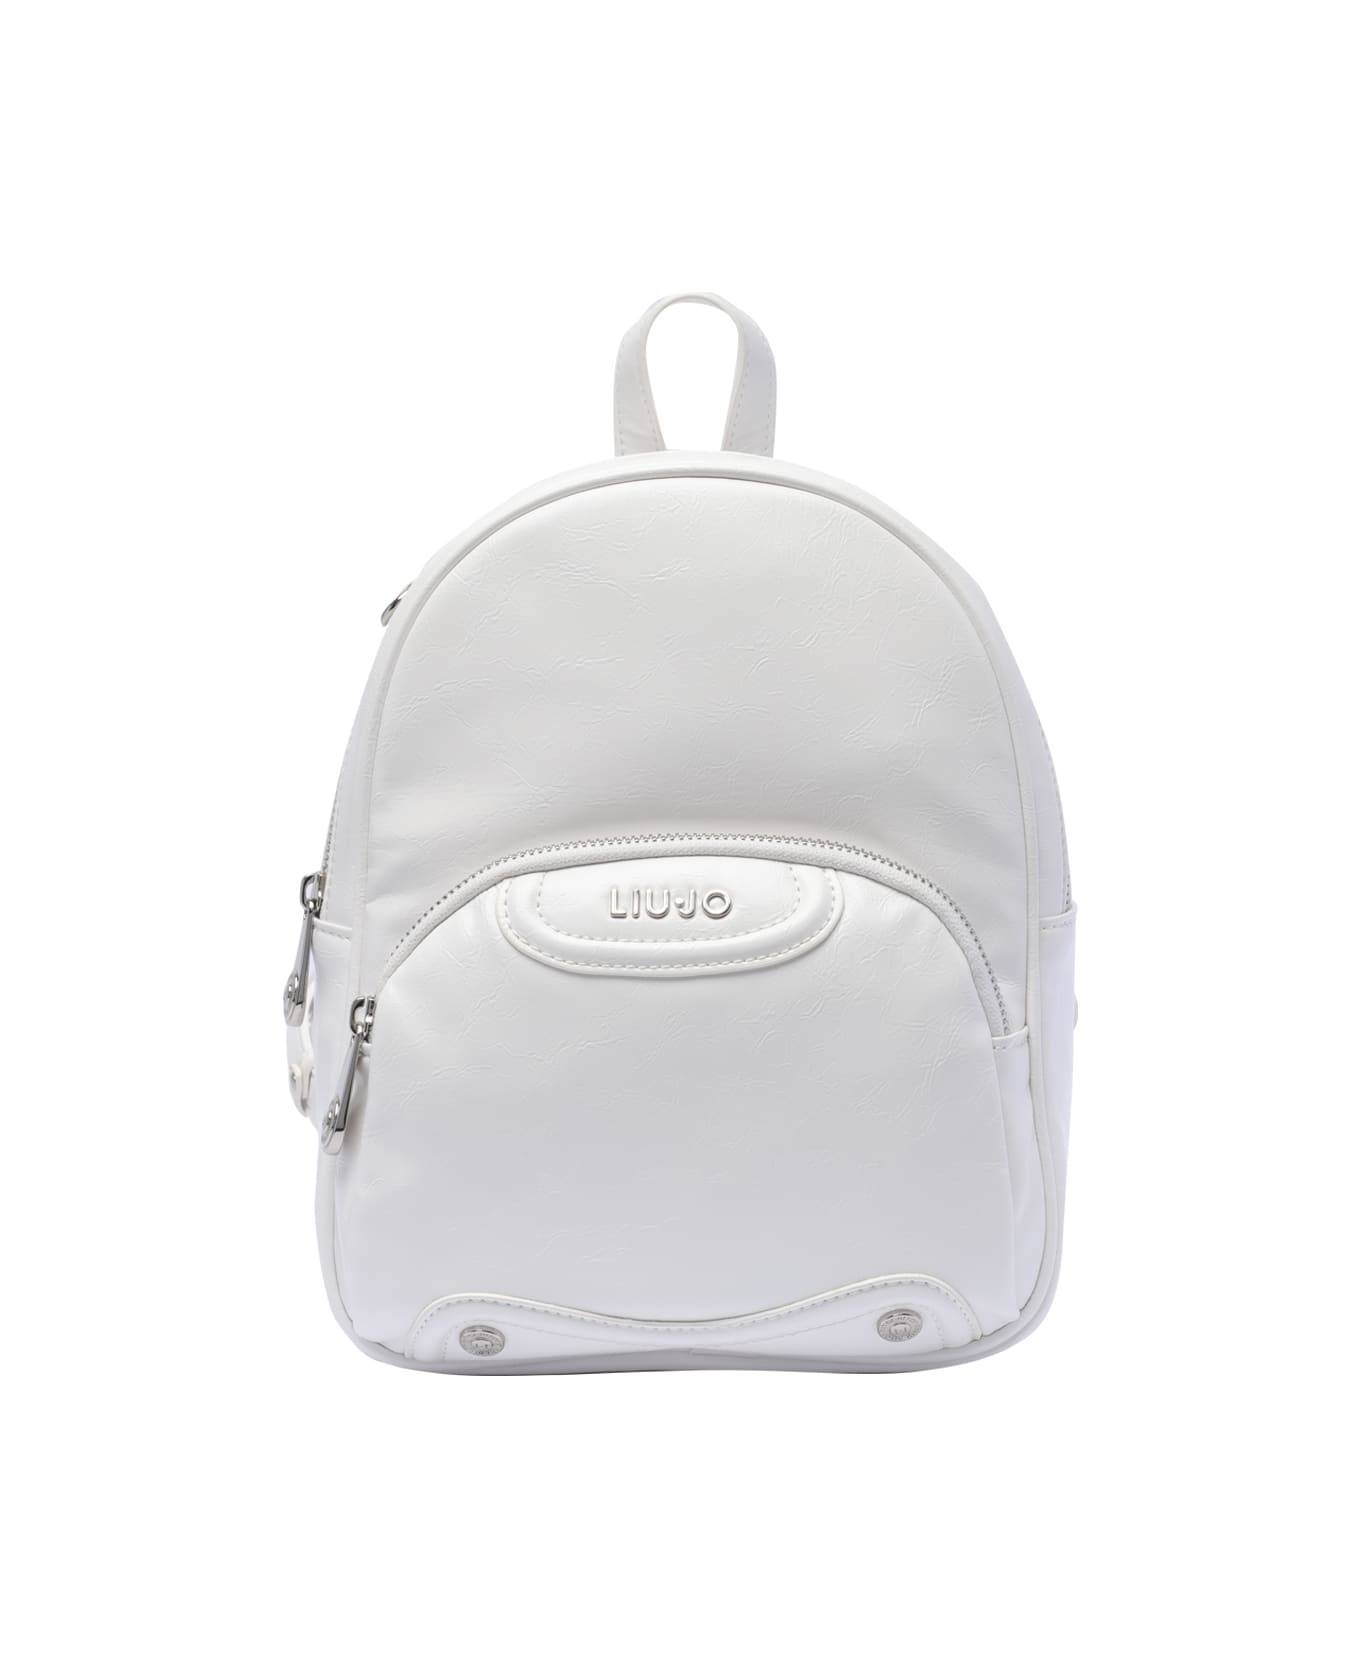 Liu-Jo Logo Backpack - White バックパック